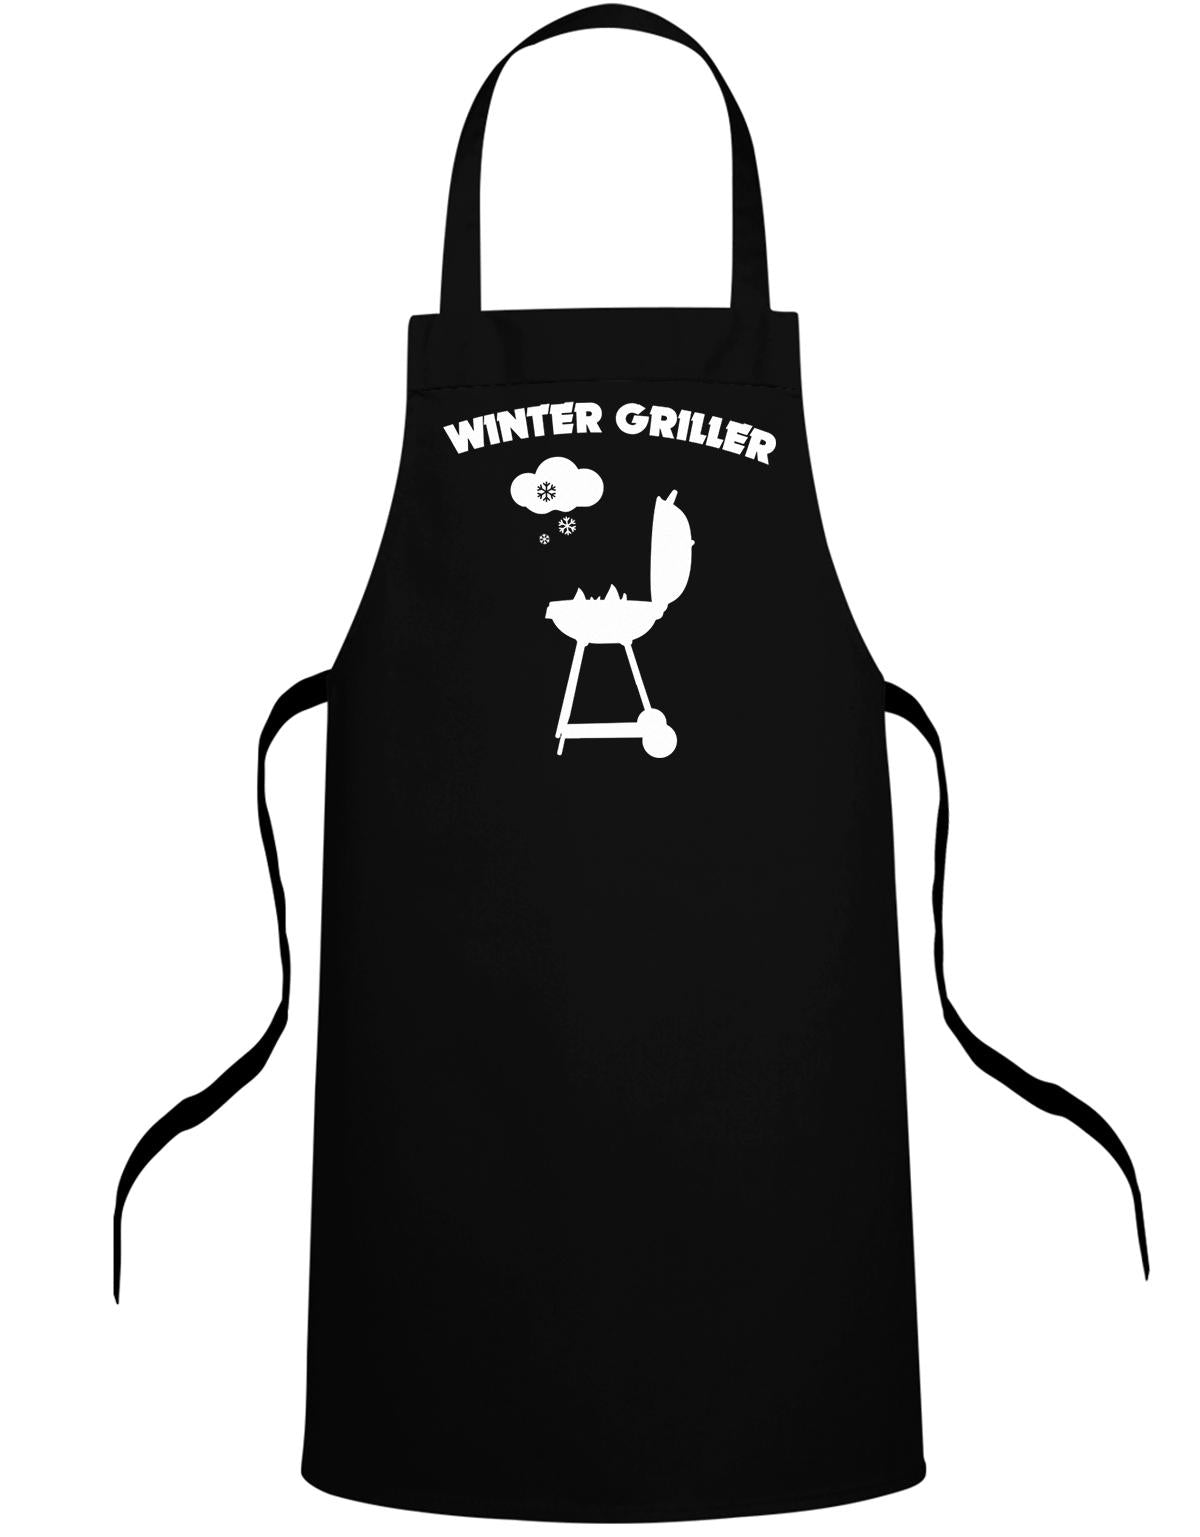 Winter Griller - Schnee Grill - Schürze